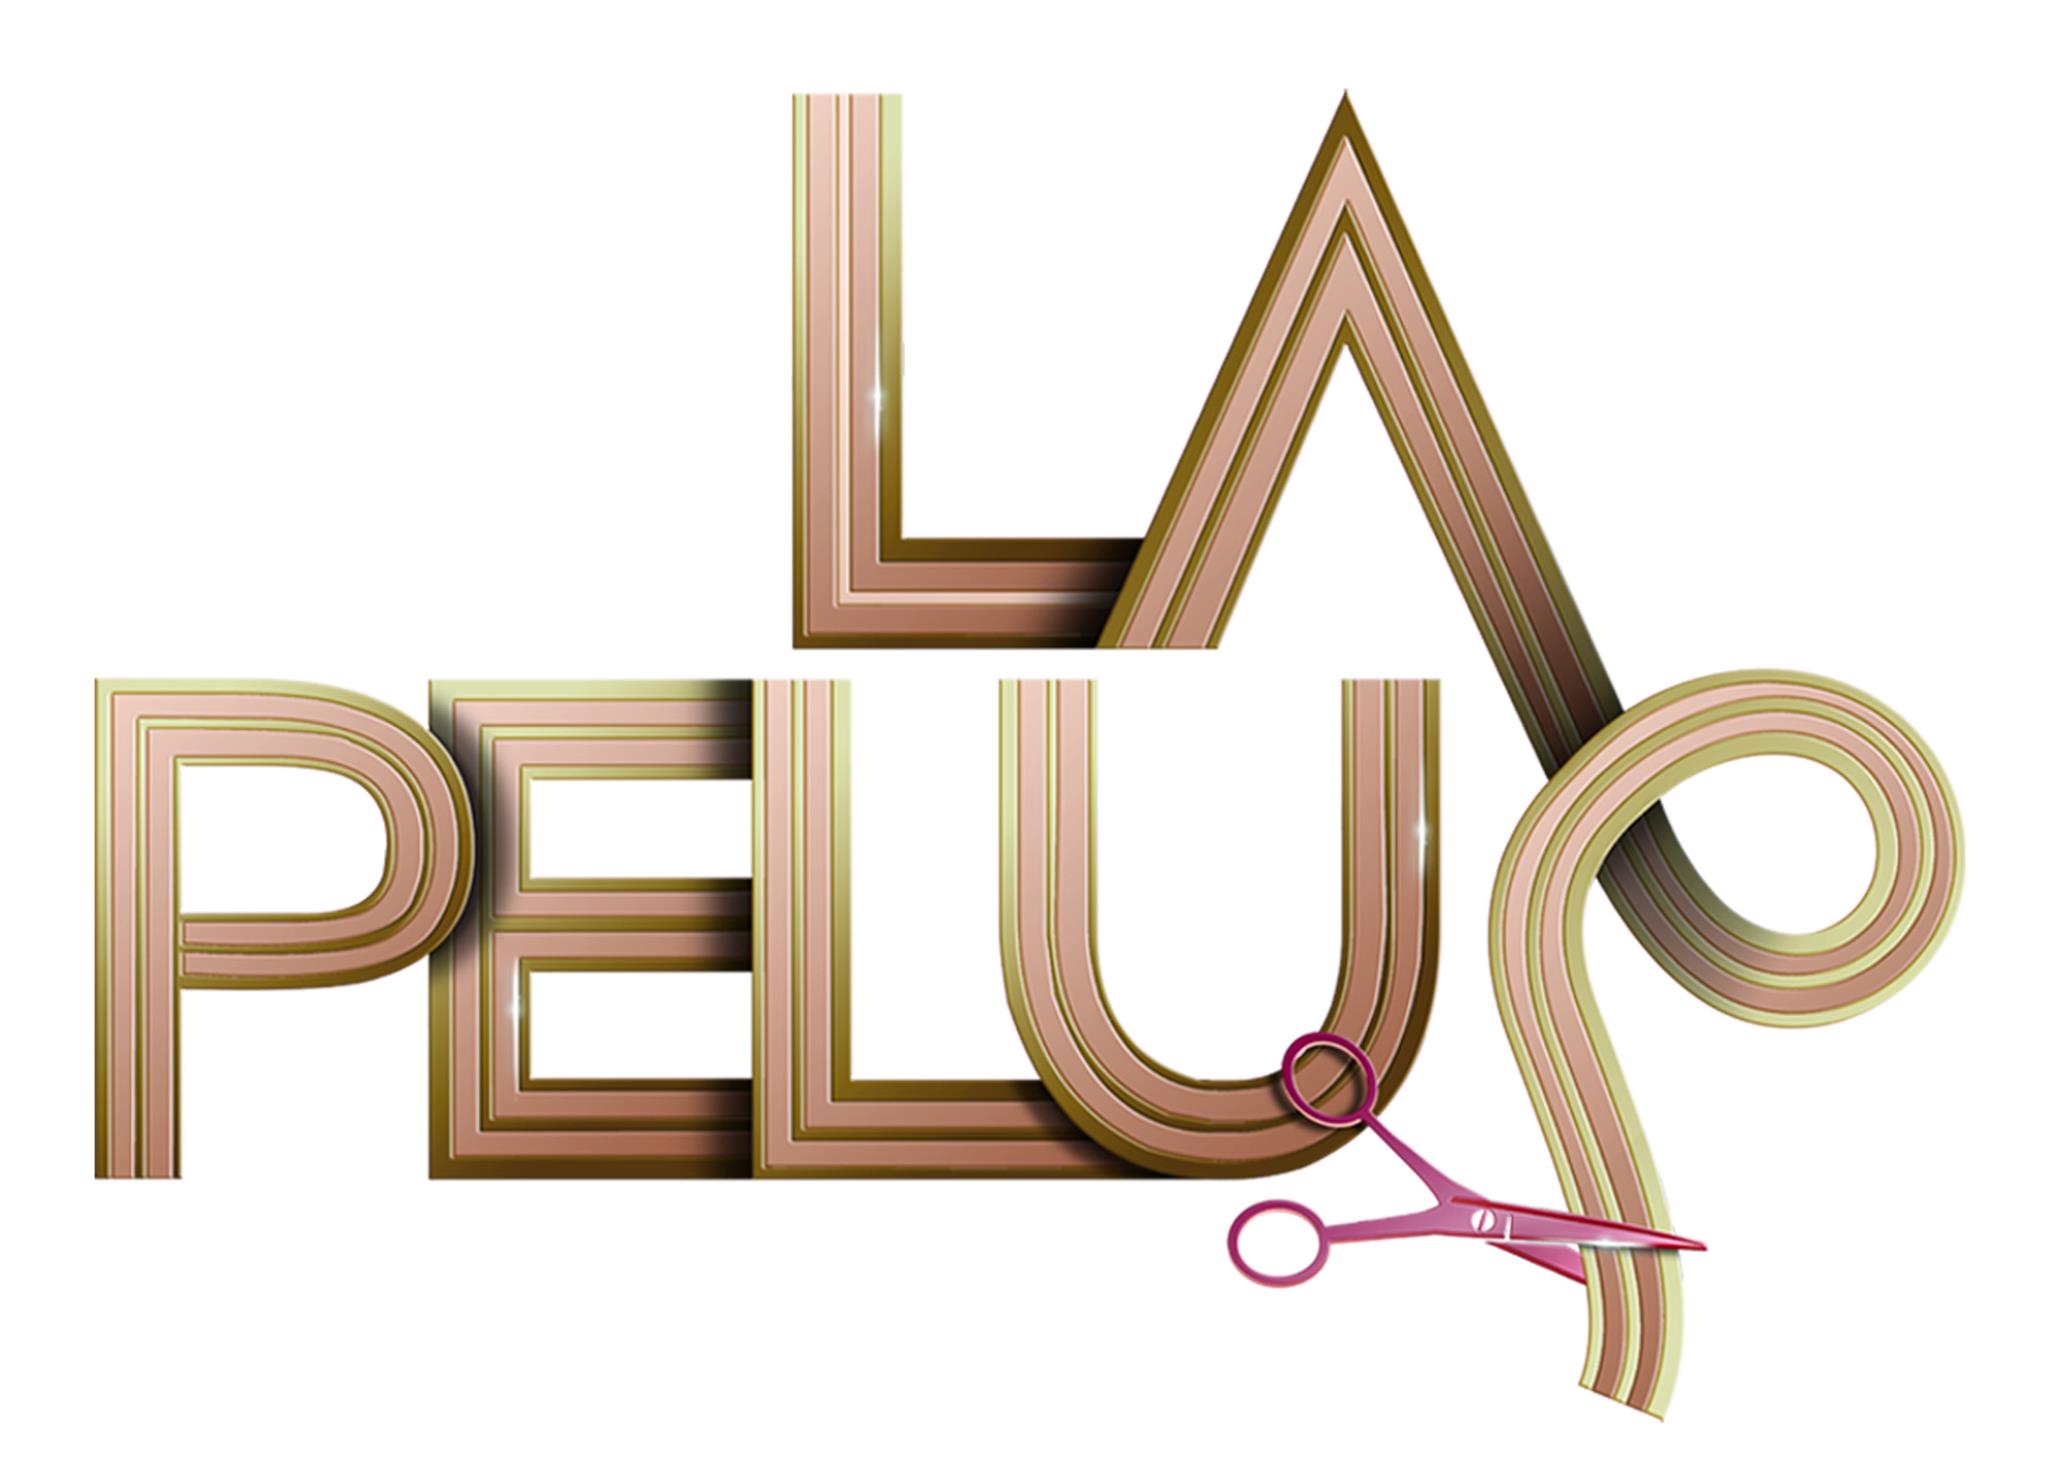 La Pelu (2012)